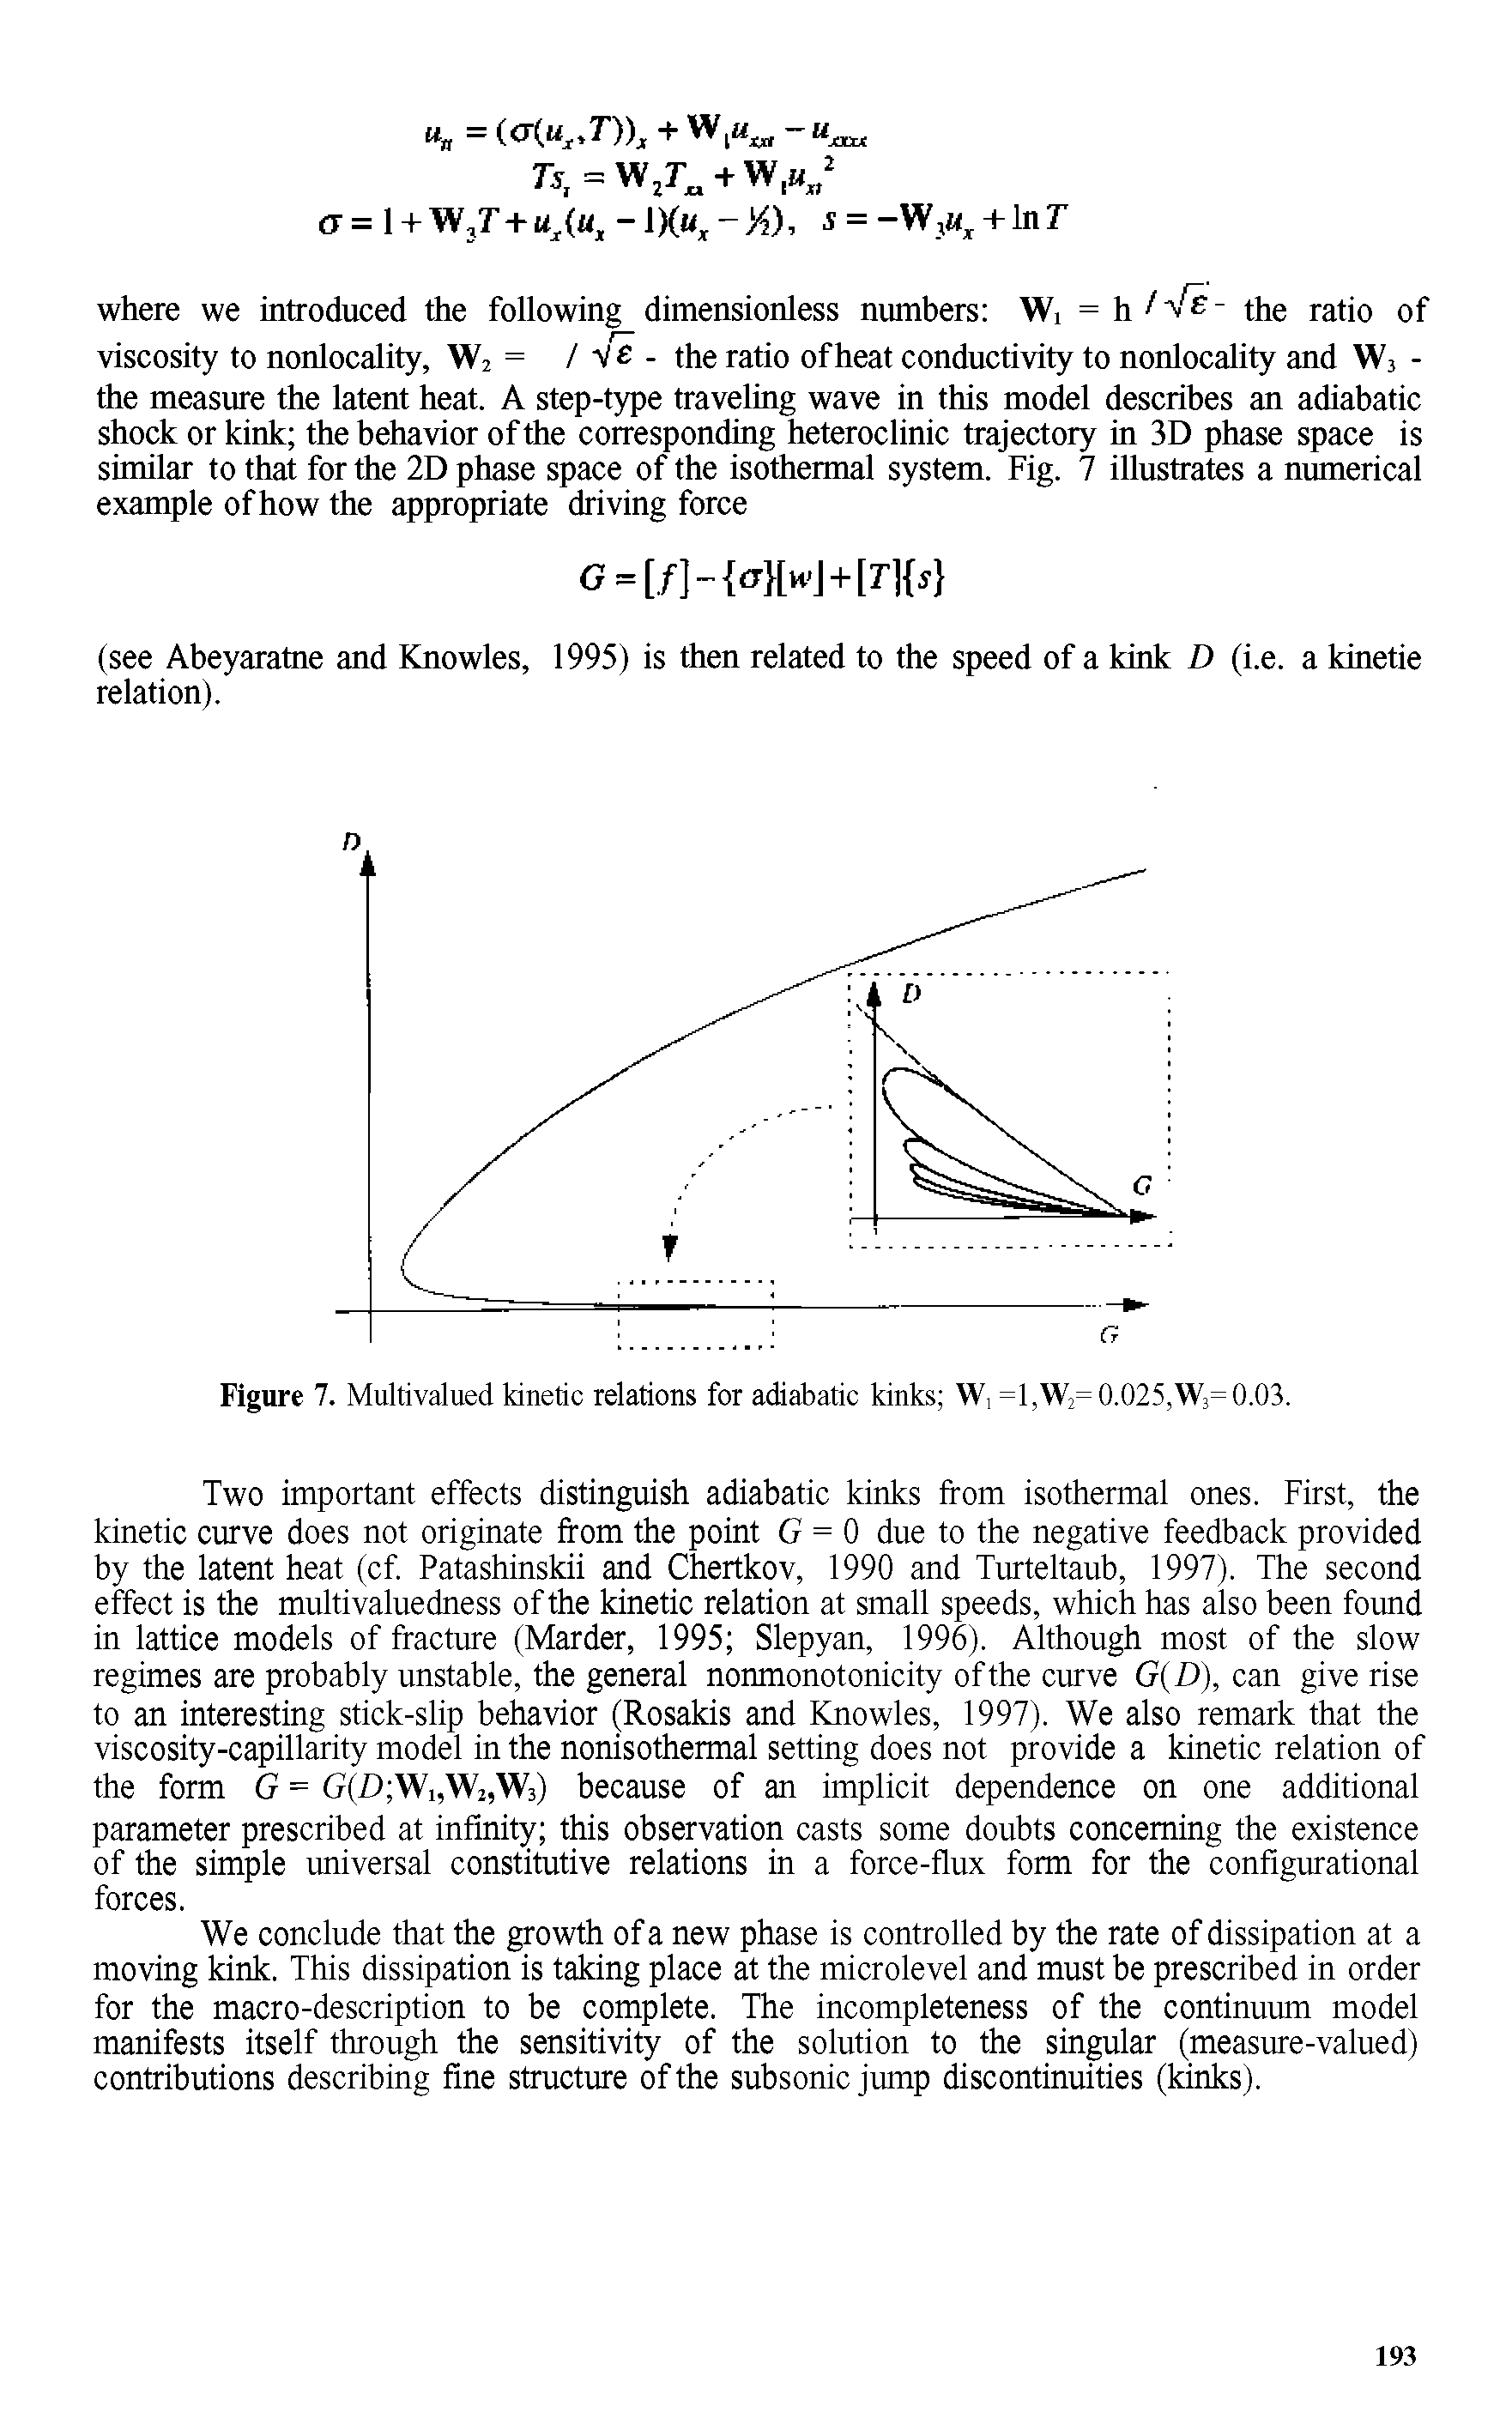 Figure 7. Multivalued kinetic relations for adiabatic kinks W, =1,W2= 0.025,W3= 0.03.